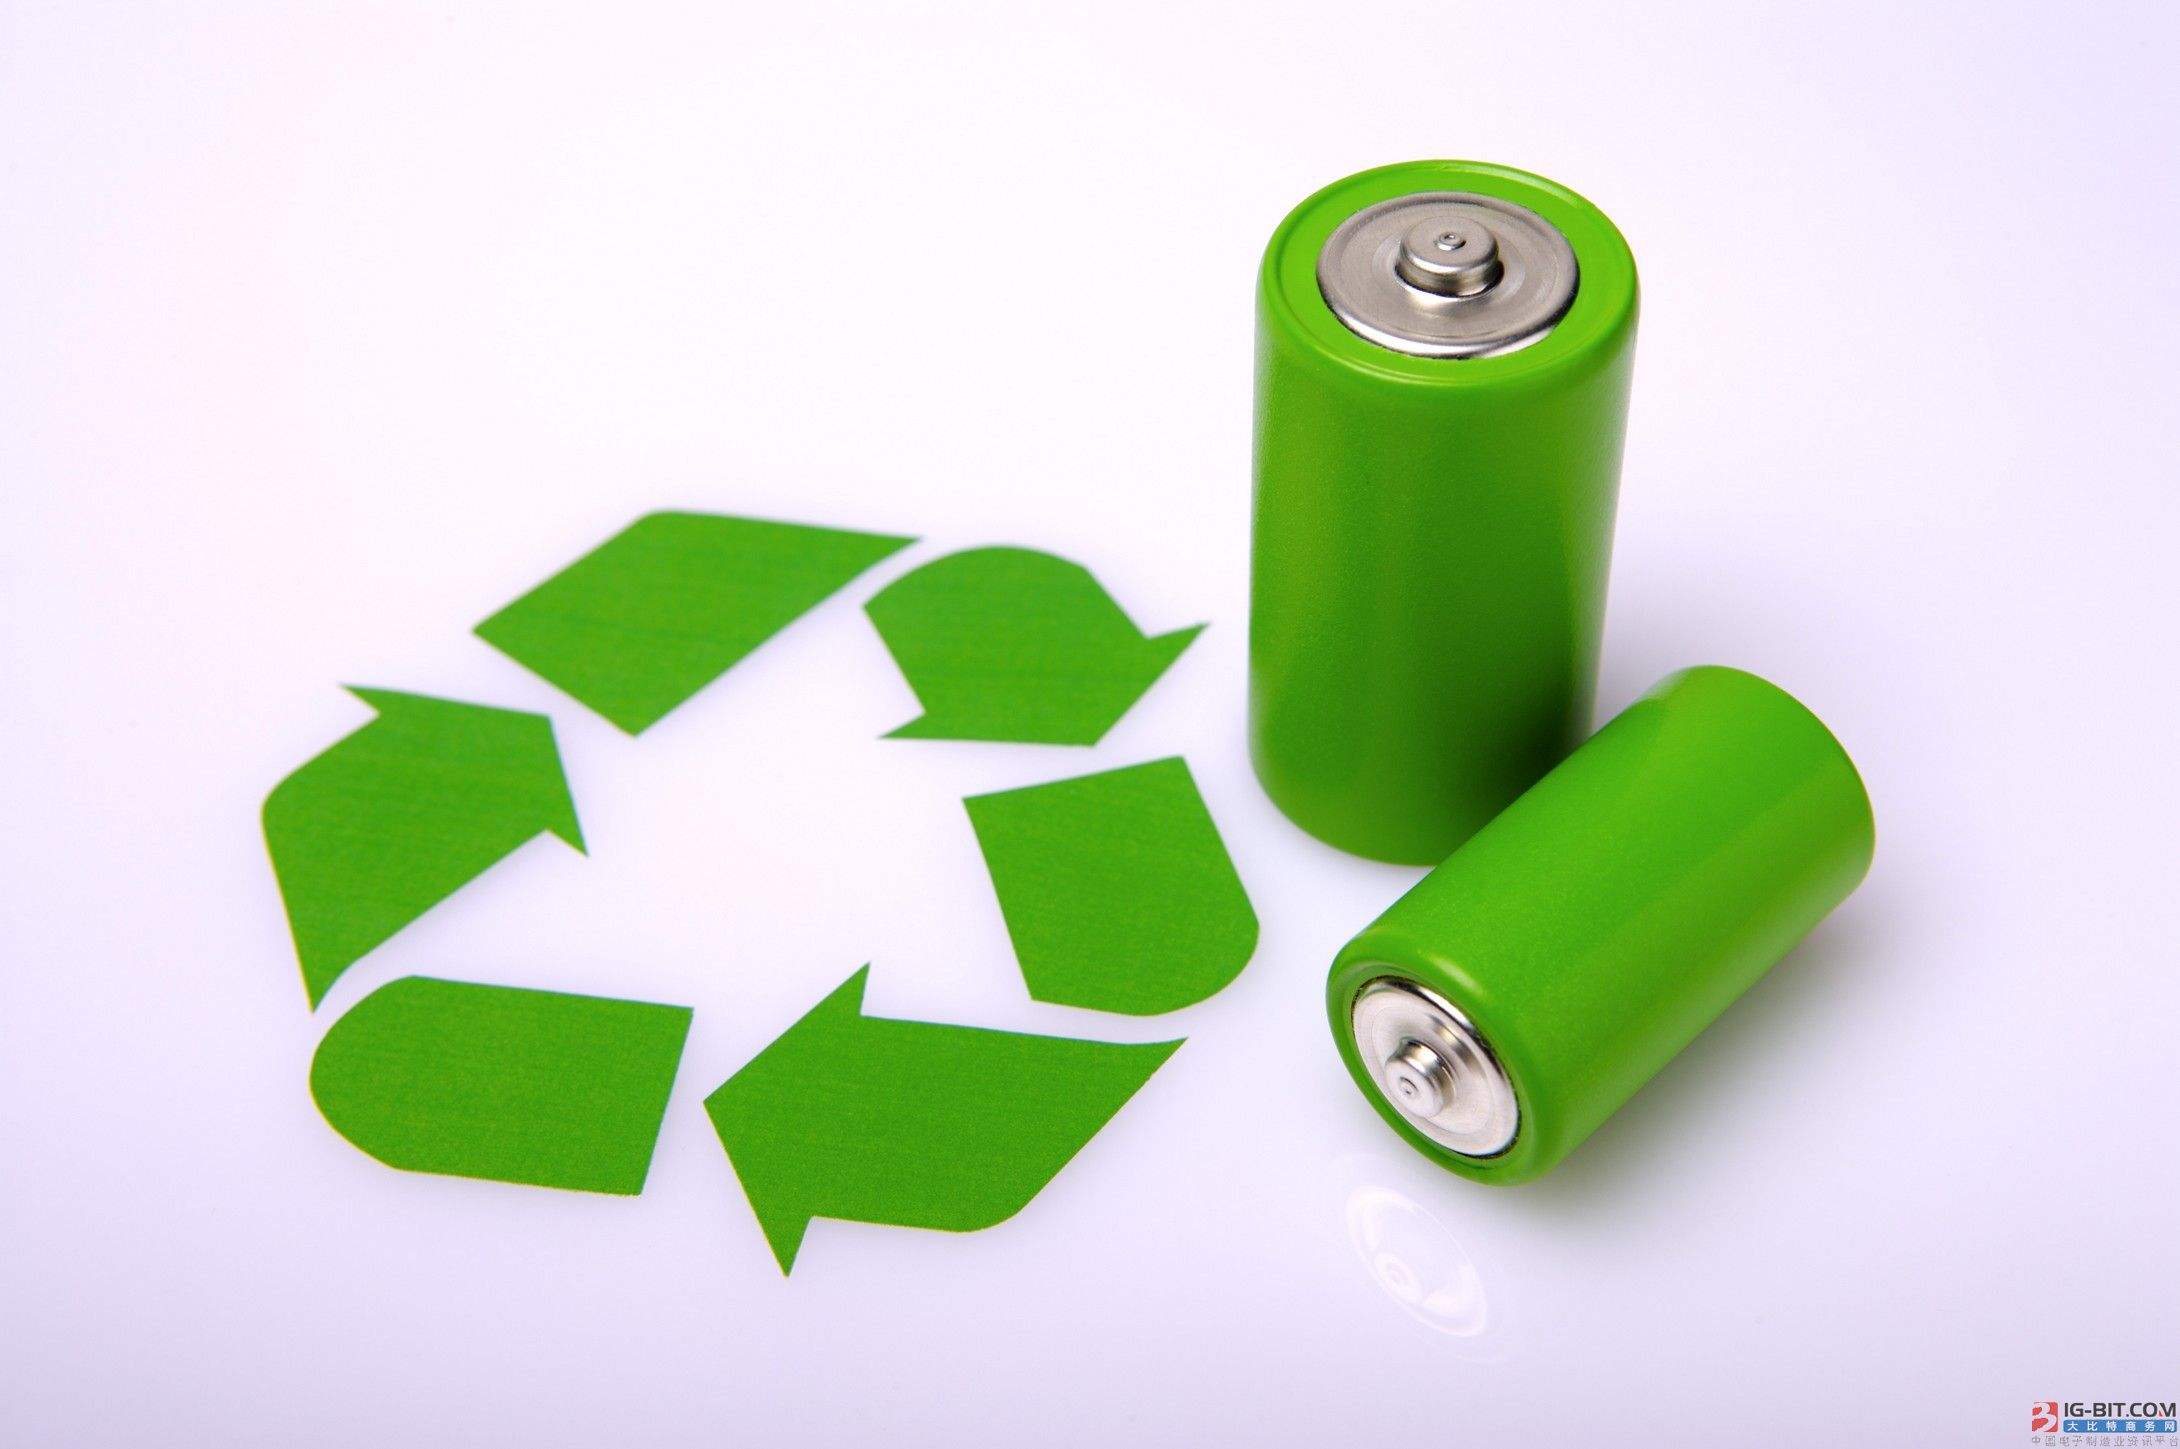 動力電池回收迎“政策紅包”